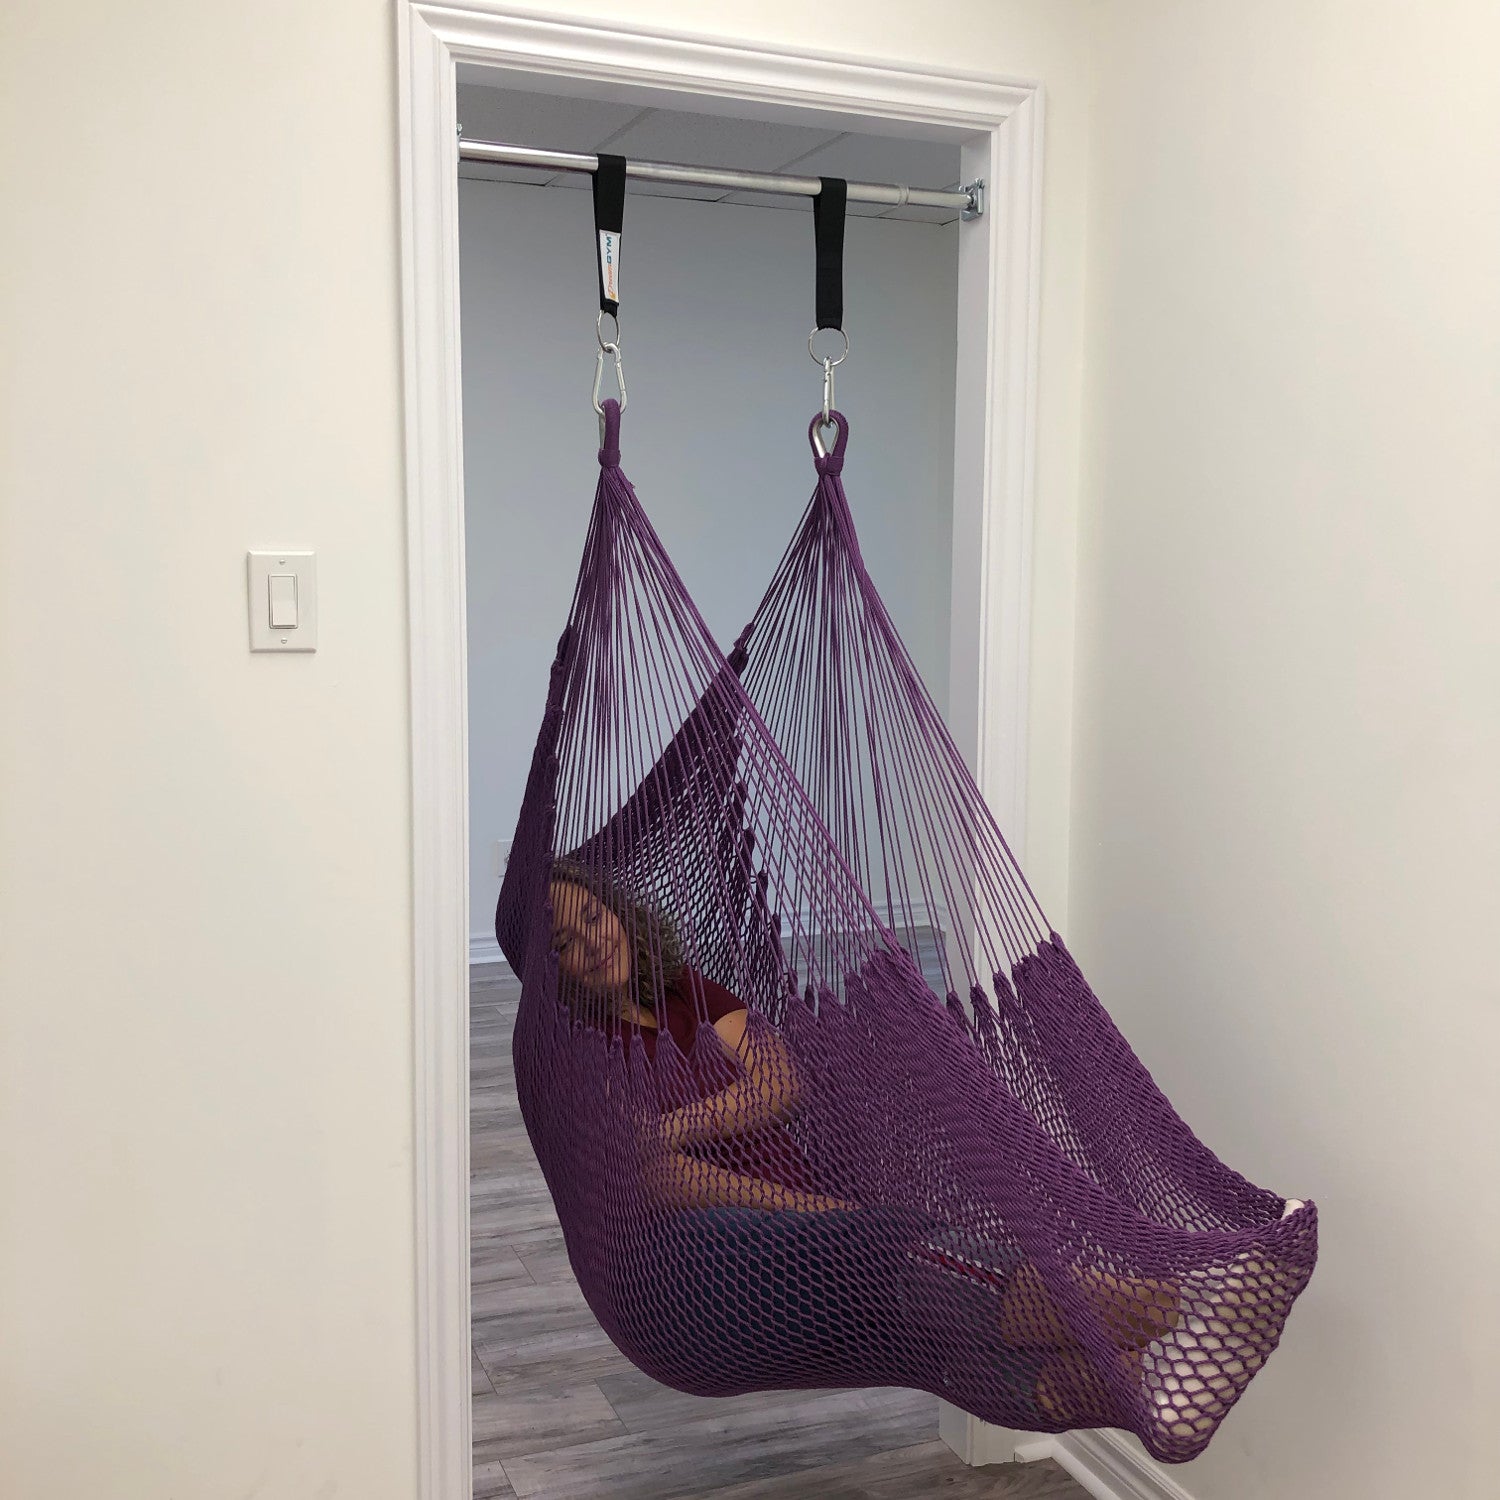 A woman is relaxing in a purple hammock swing installed in a door frame.